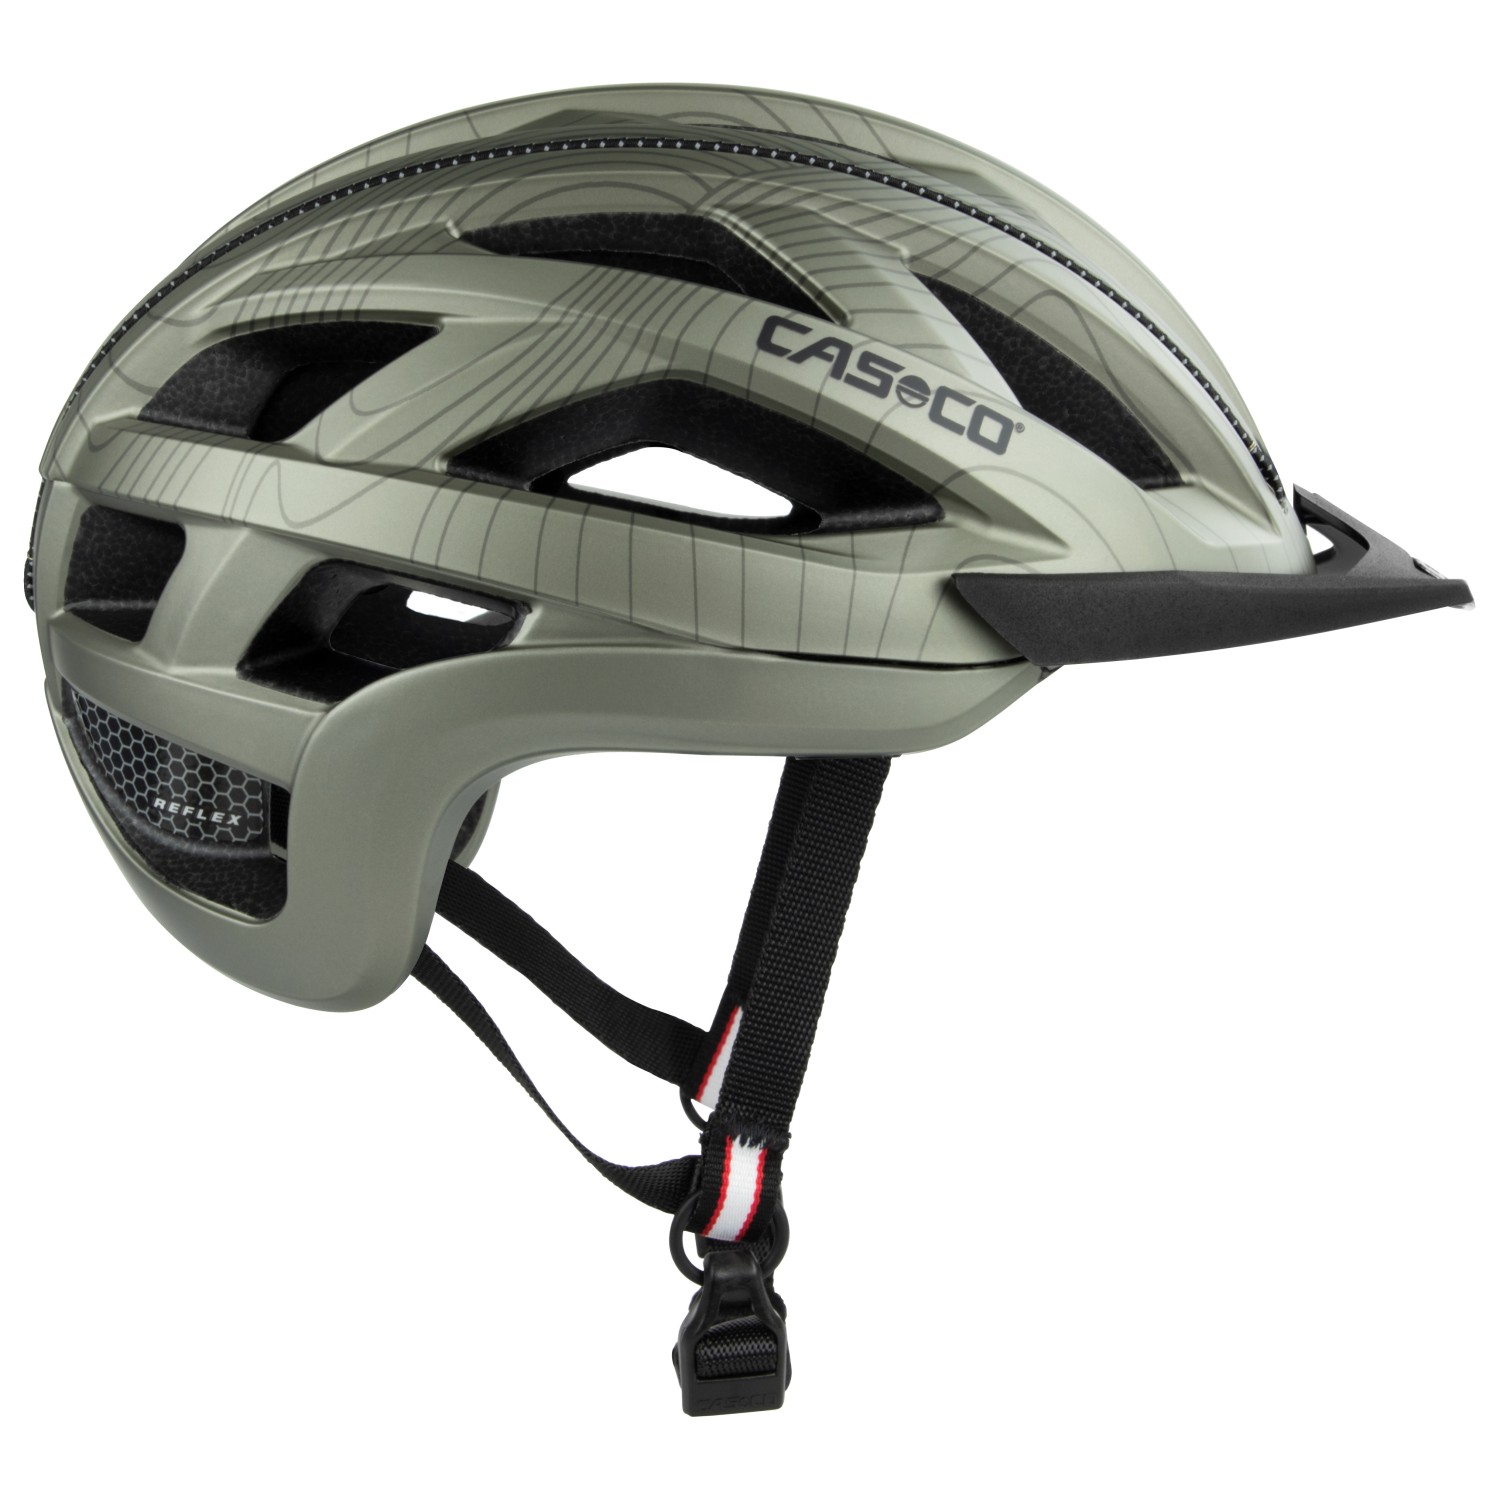 Велосипедный шлем Casco Cuda 2, цвет Gold/Grey шлем casco cuda 2